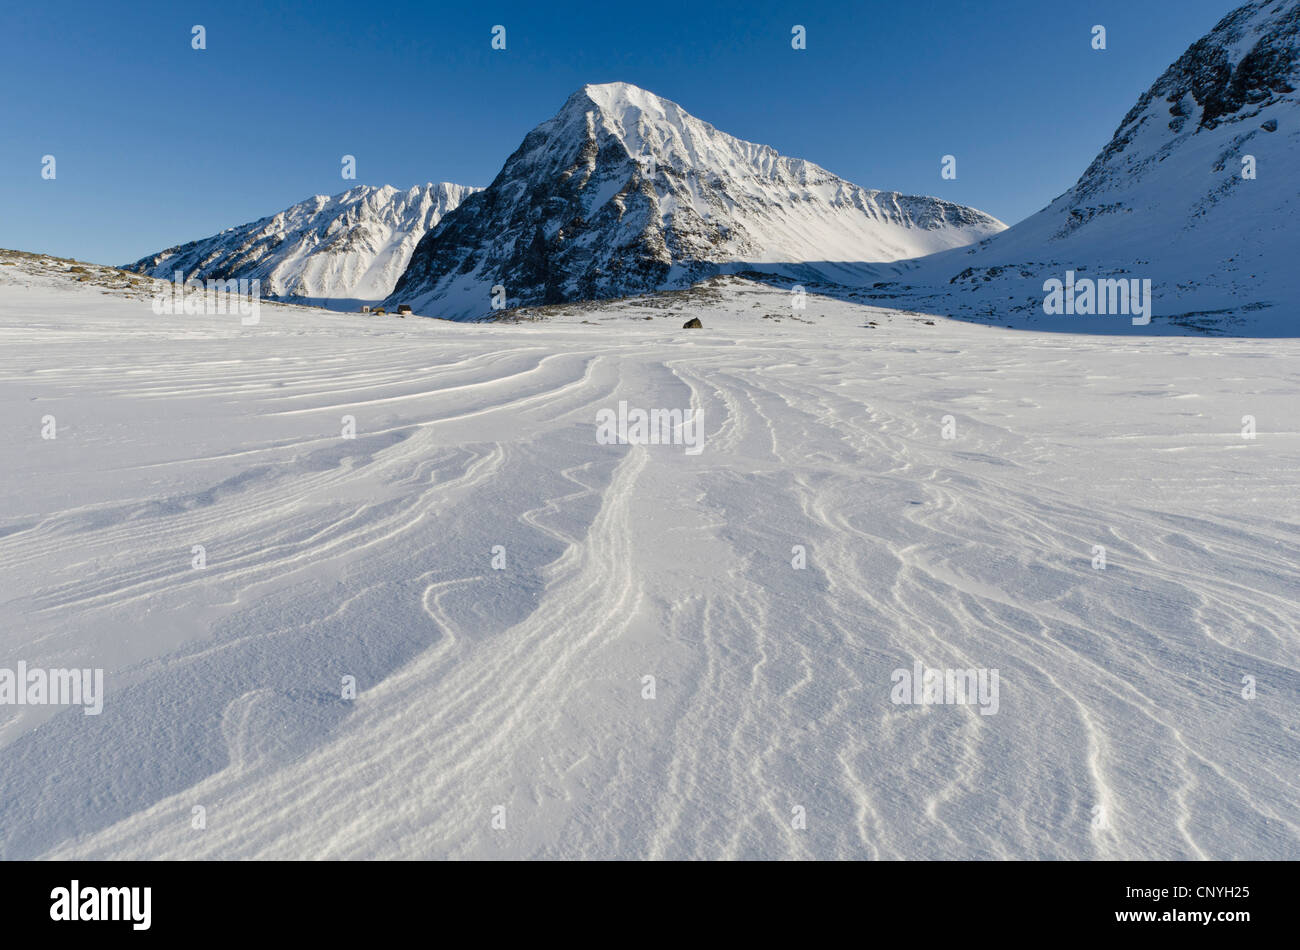 La montagne et la vallée Pyramiden Unna, Reaiddavaggi Kebnekaise est tombé, la Suède, la Laponie, Norrbotten Banque D'Images